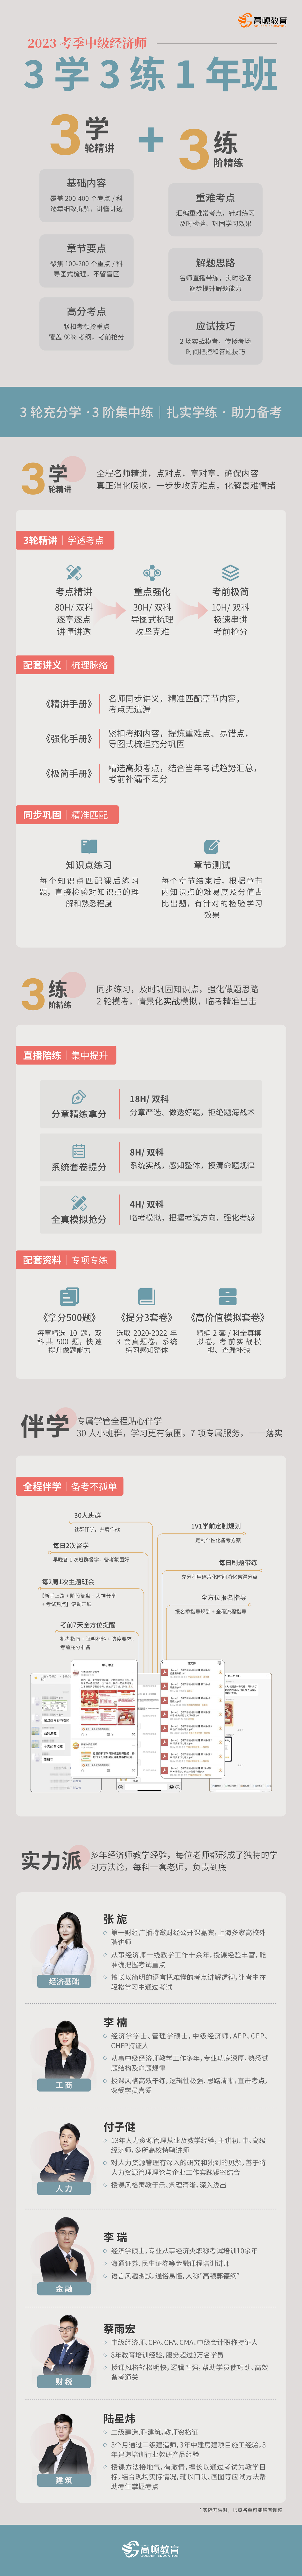 https://simg01.gaodunwangxiao.com/uploadfiles/product-center/202211/01/c59aa_20221101111048.jpg